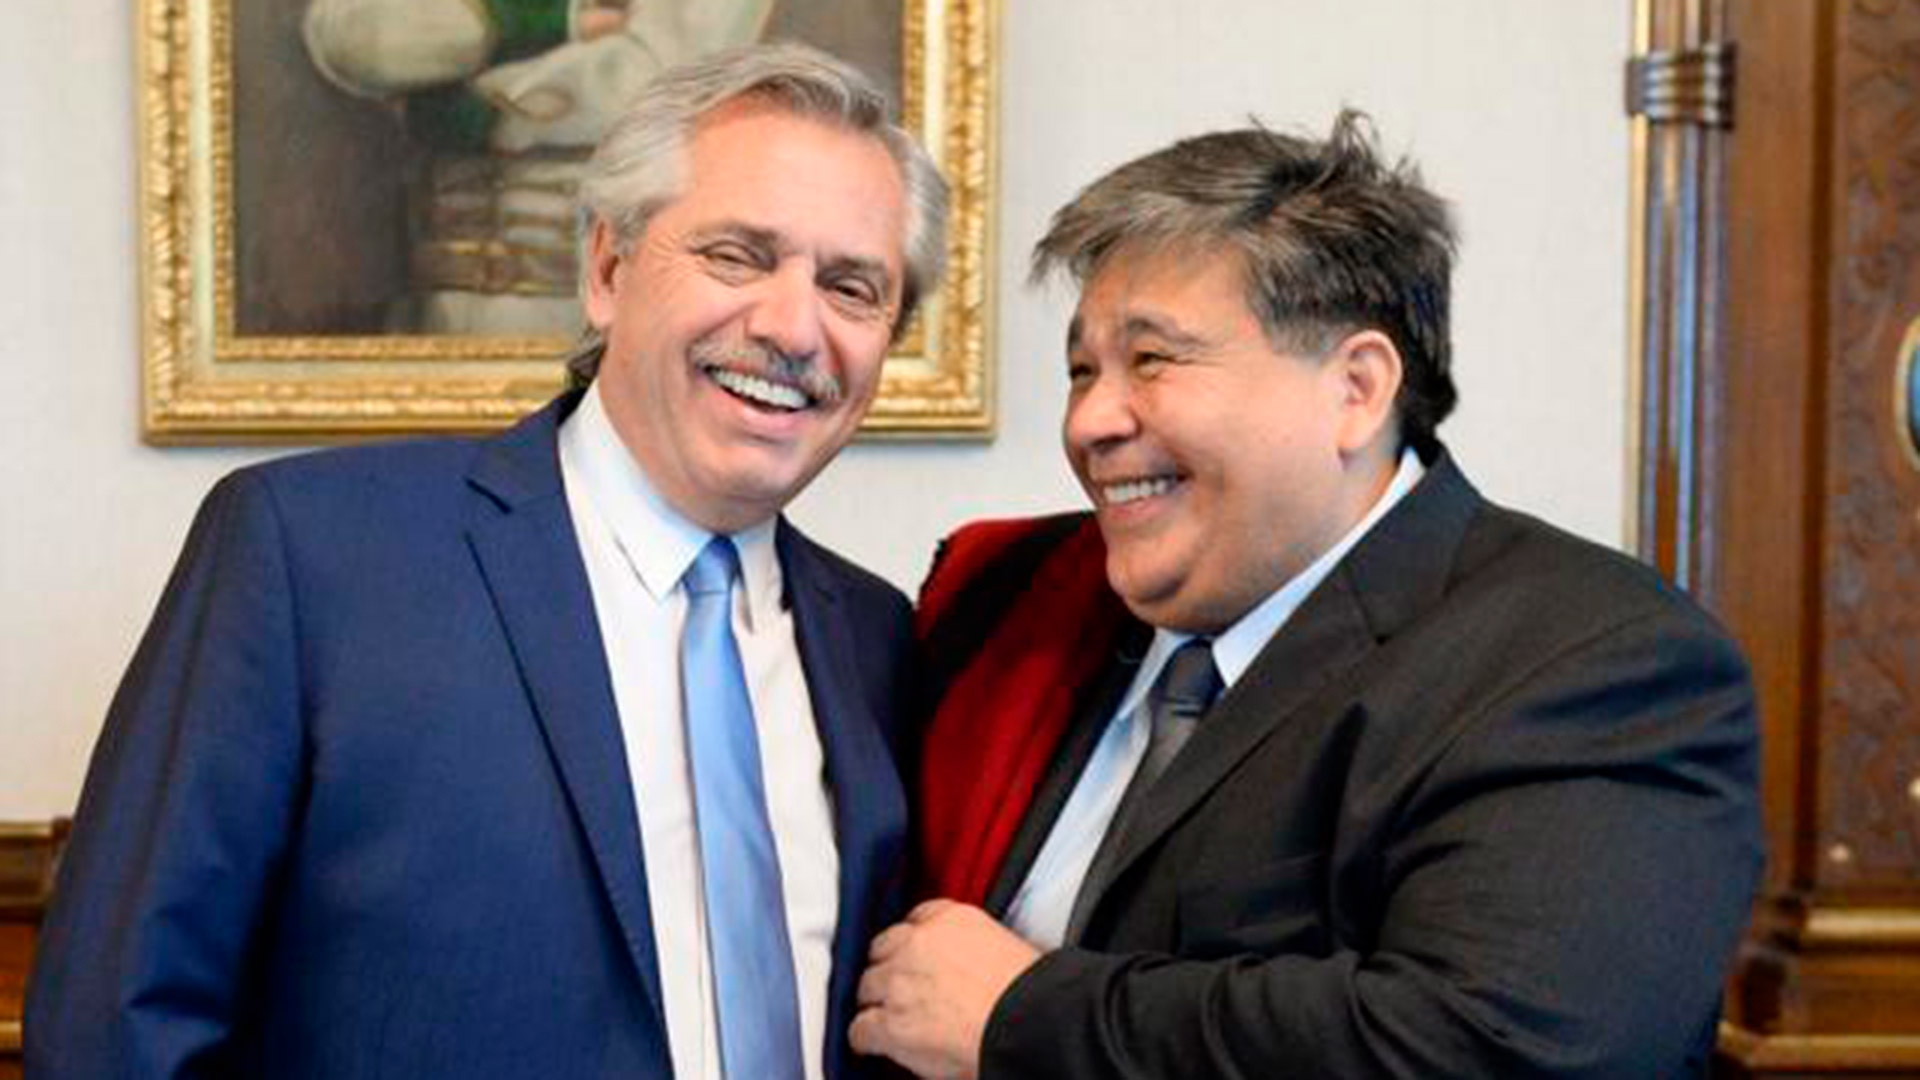 El presidente Alberto Fernández y el intendente de José C. Paz, Mario Ishii, a quien decidió llevar a la gira por Rusia y China.